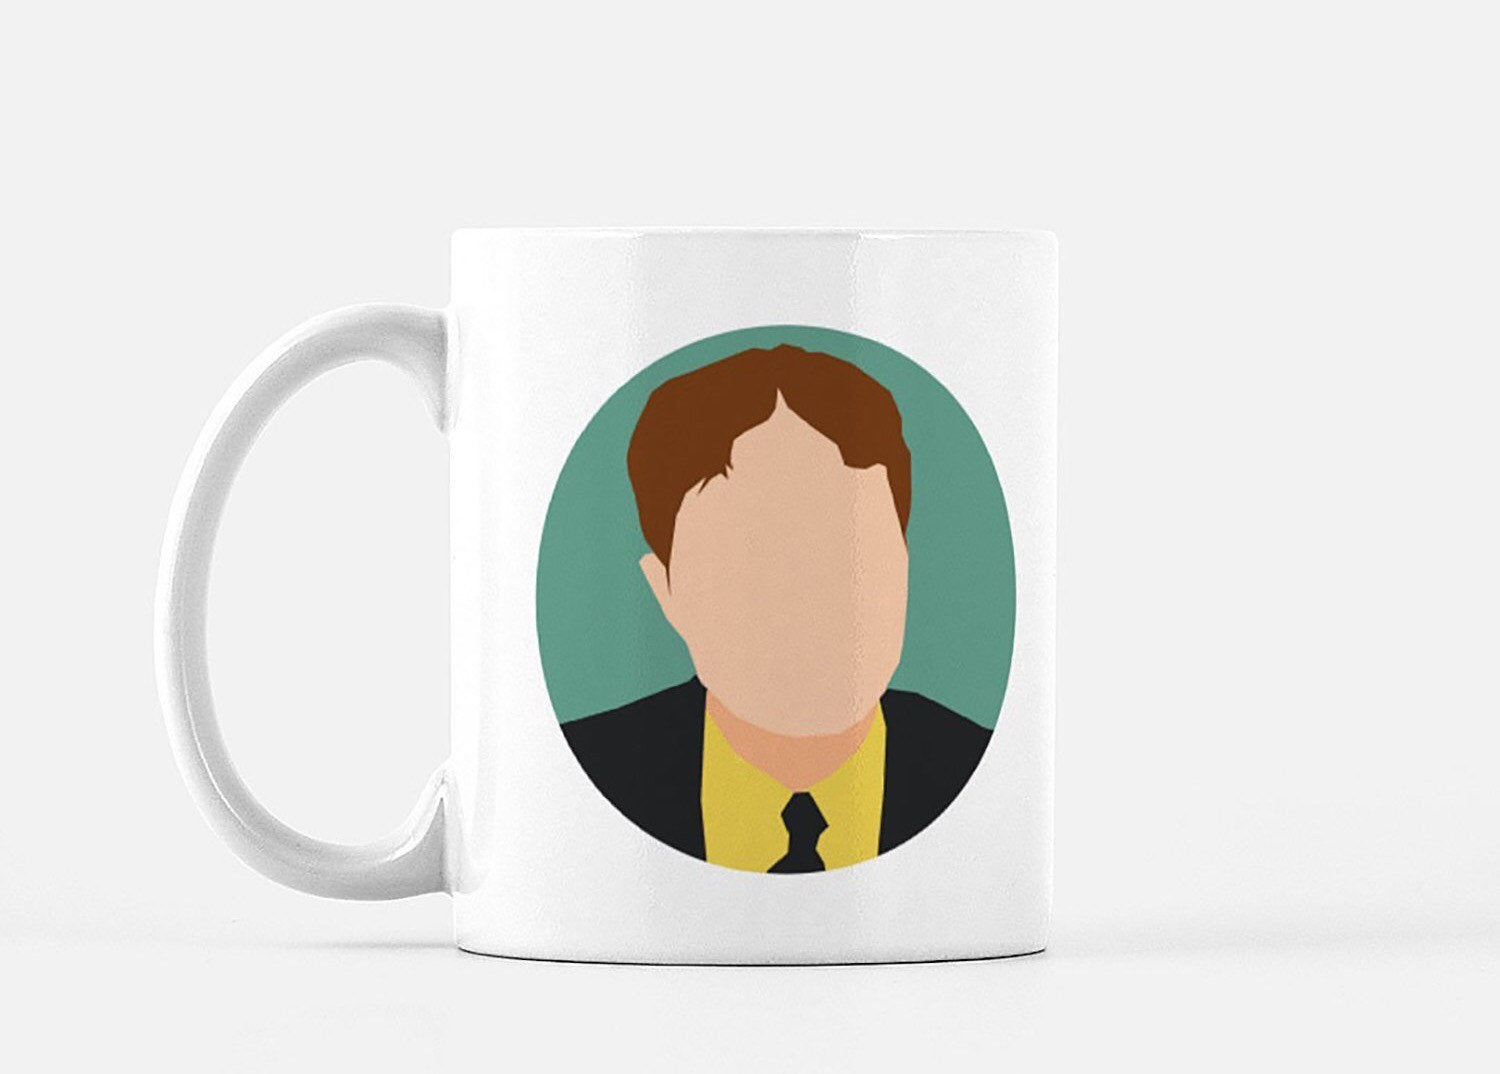 The Office's Dwight fan gift